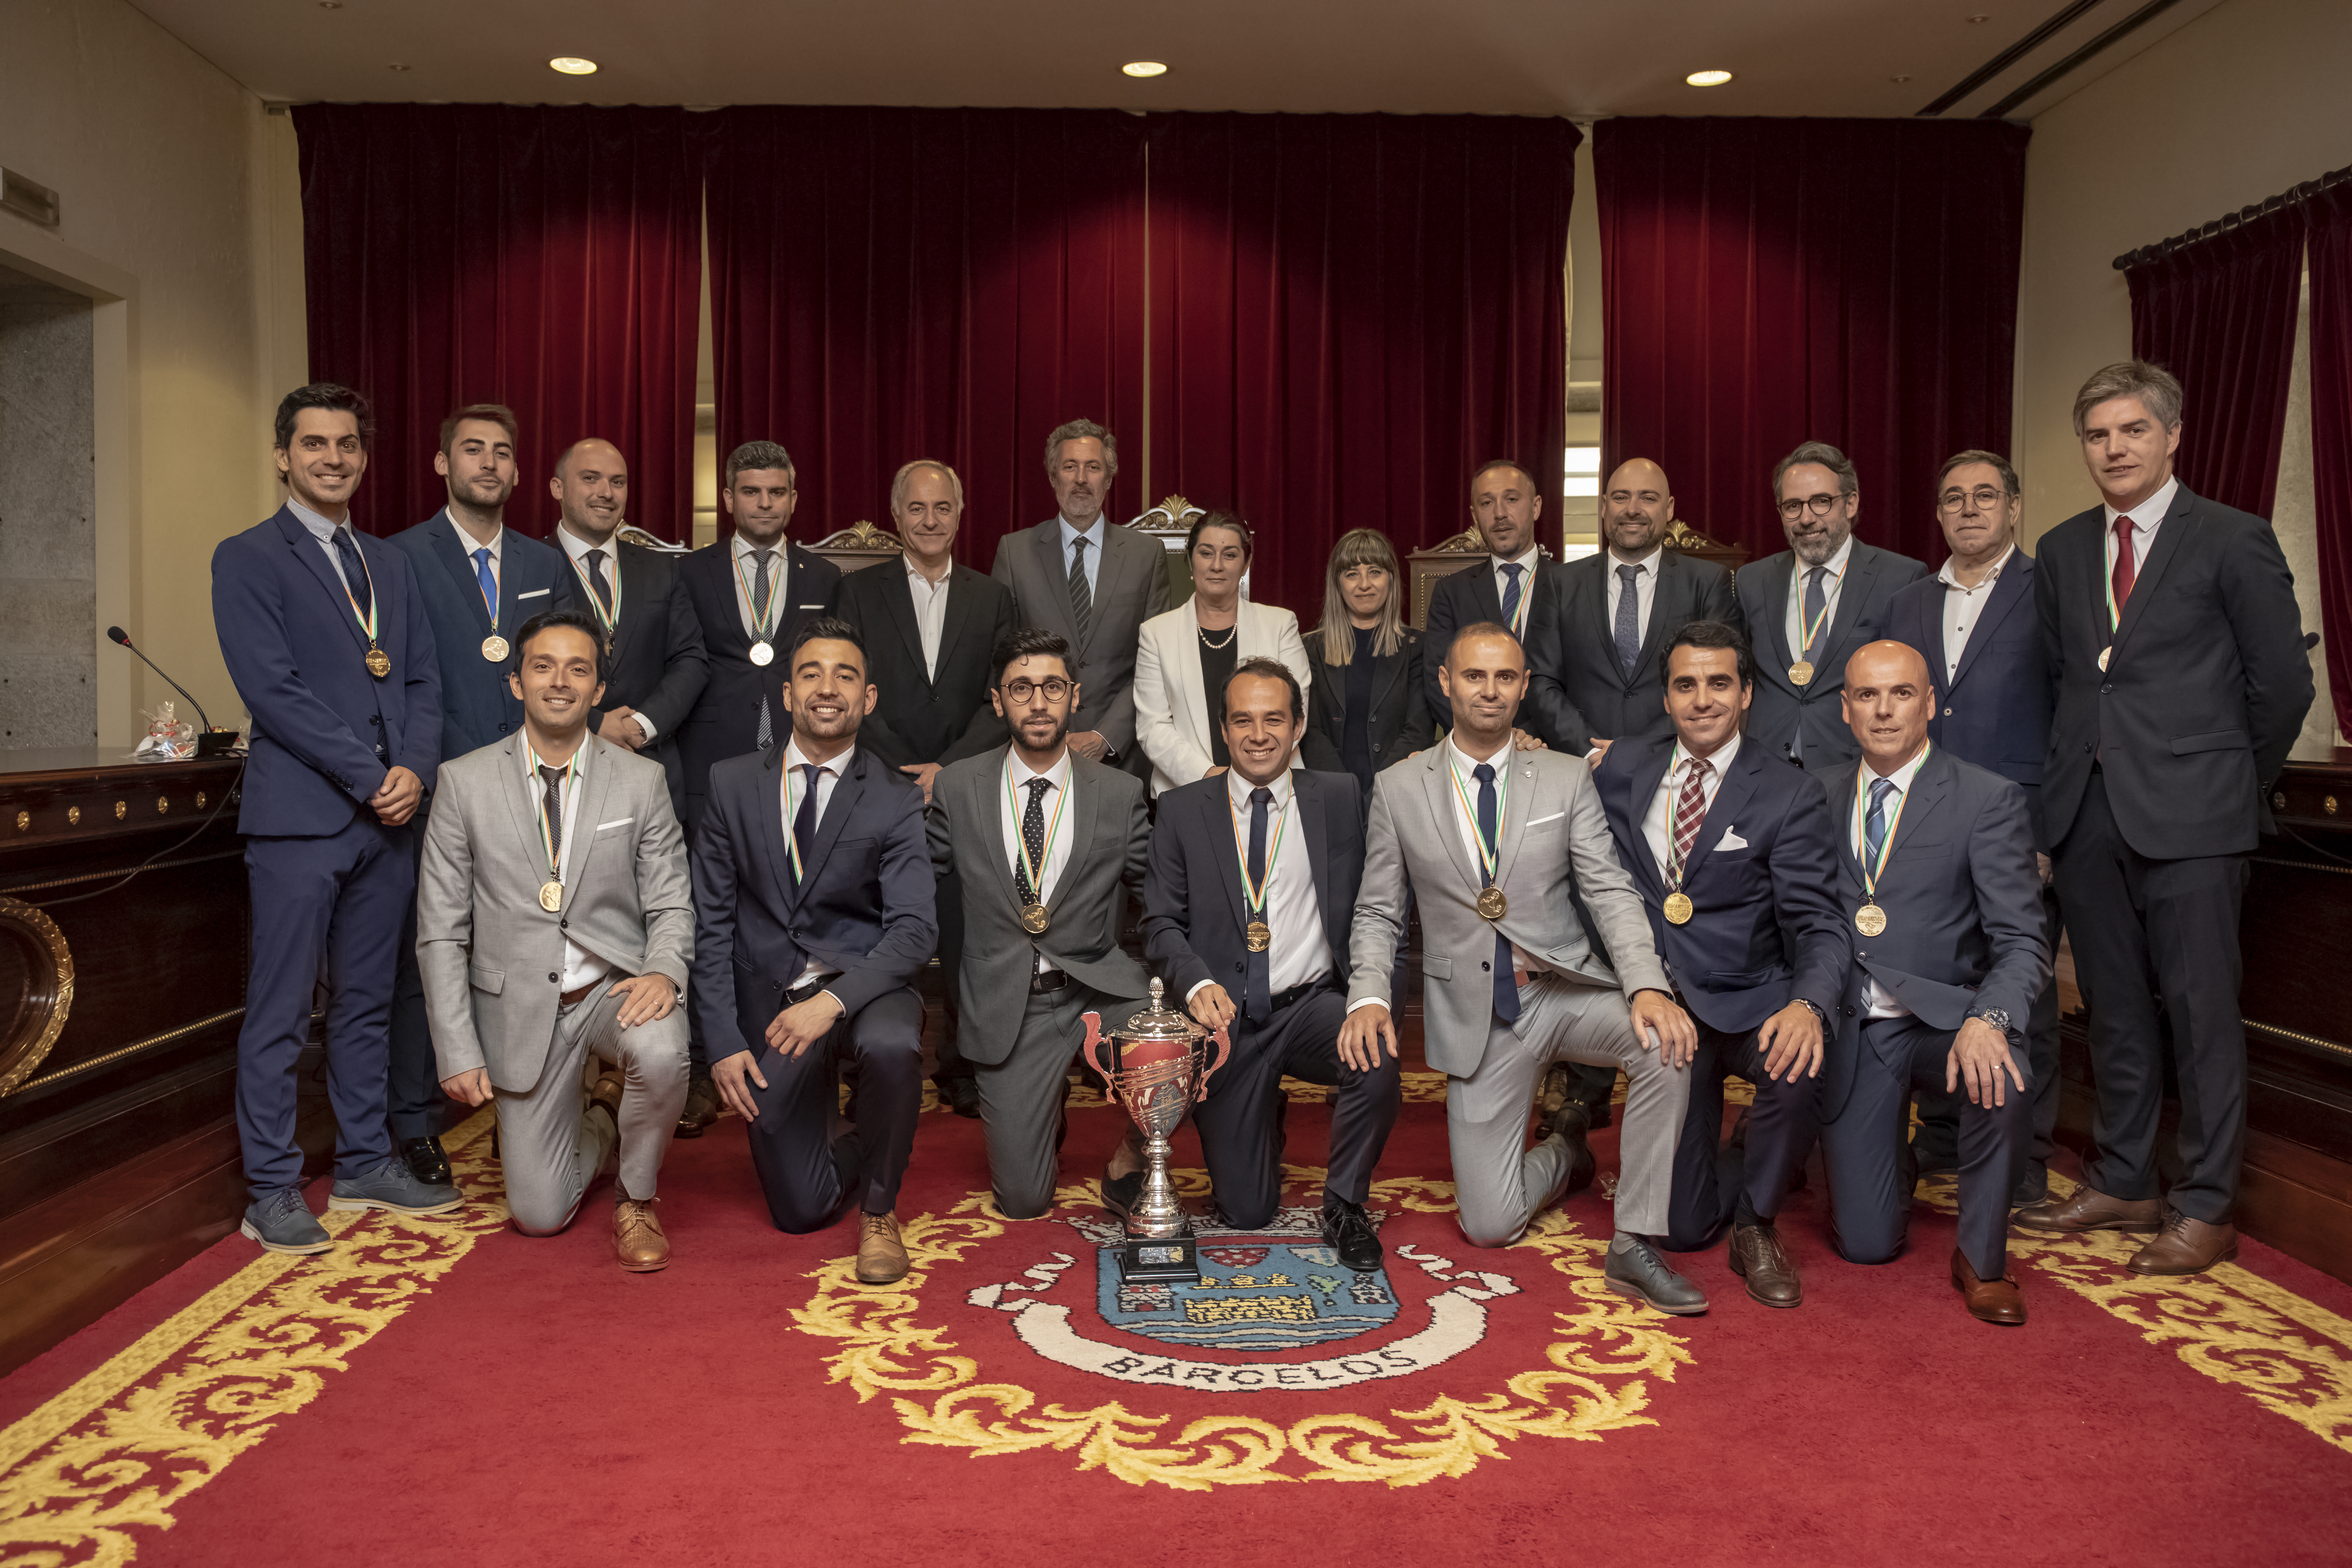 Advogados de Barcelos campeões da Europa recebidos nos Paços do Concelho